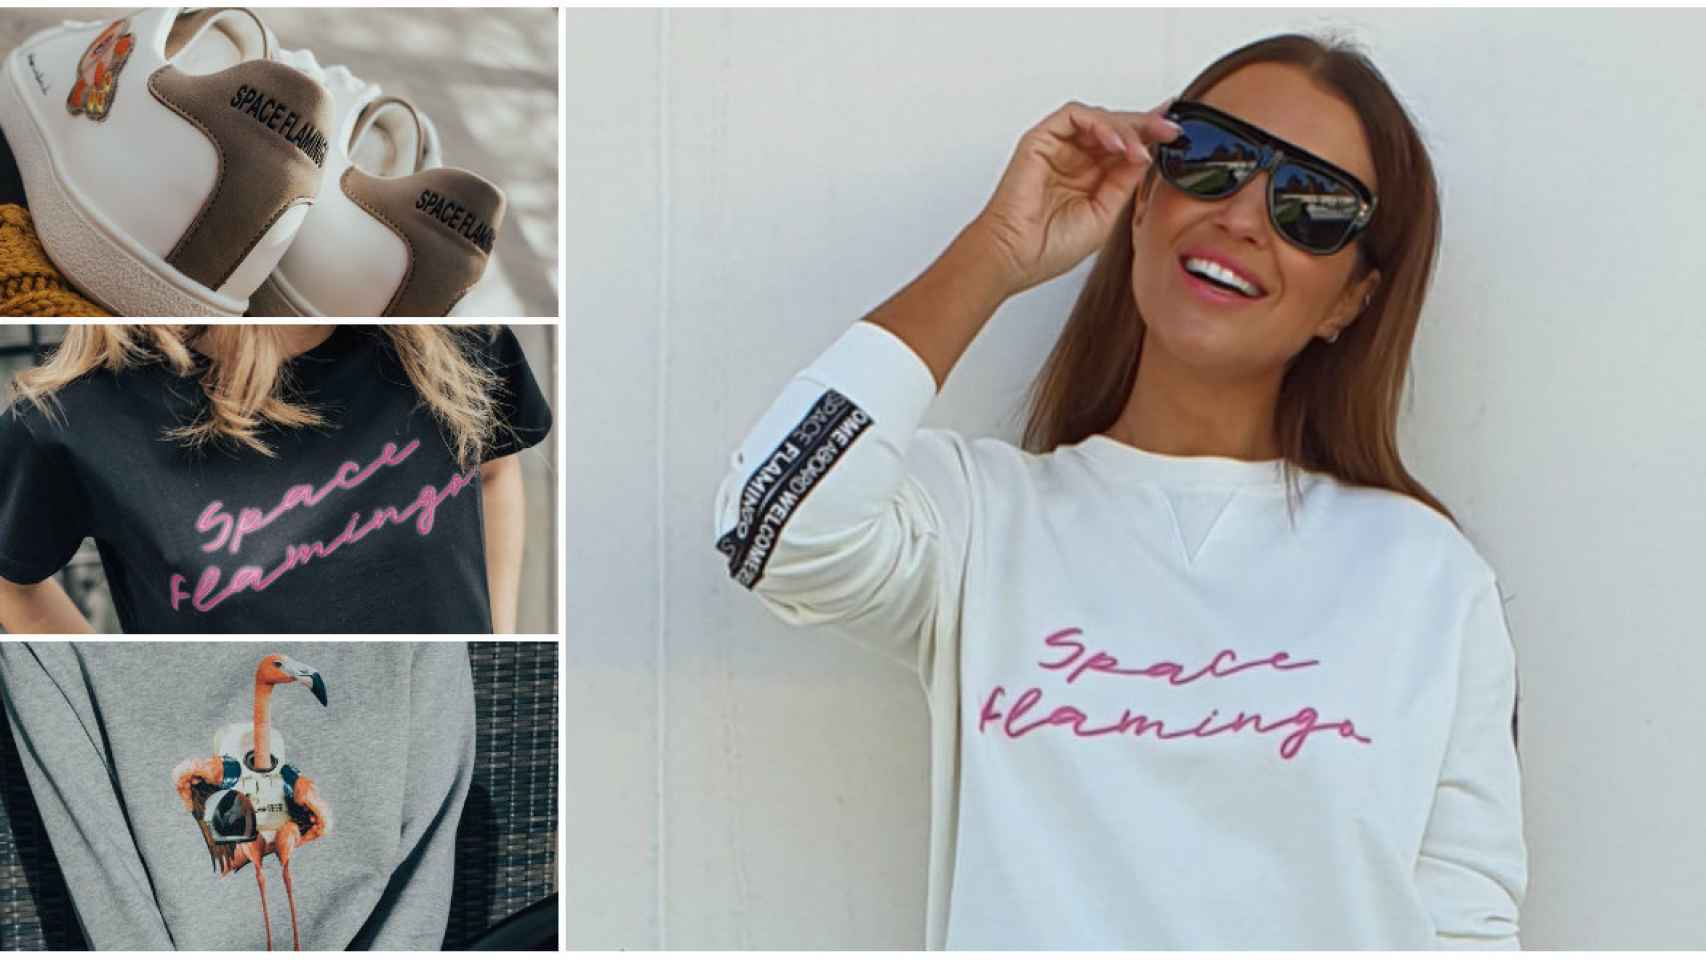 Así es 'Space Flamingo', la nueva marca de ropa de Paula Echevarría